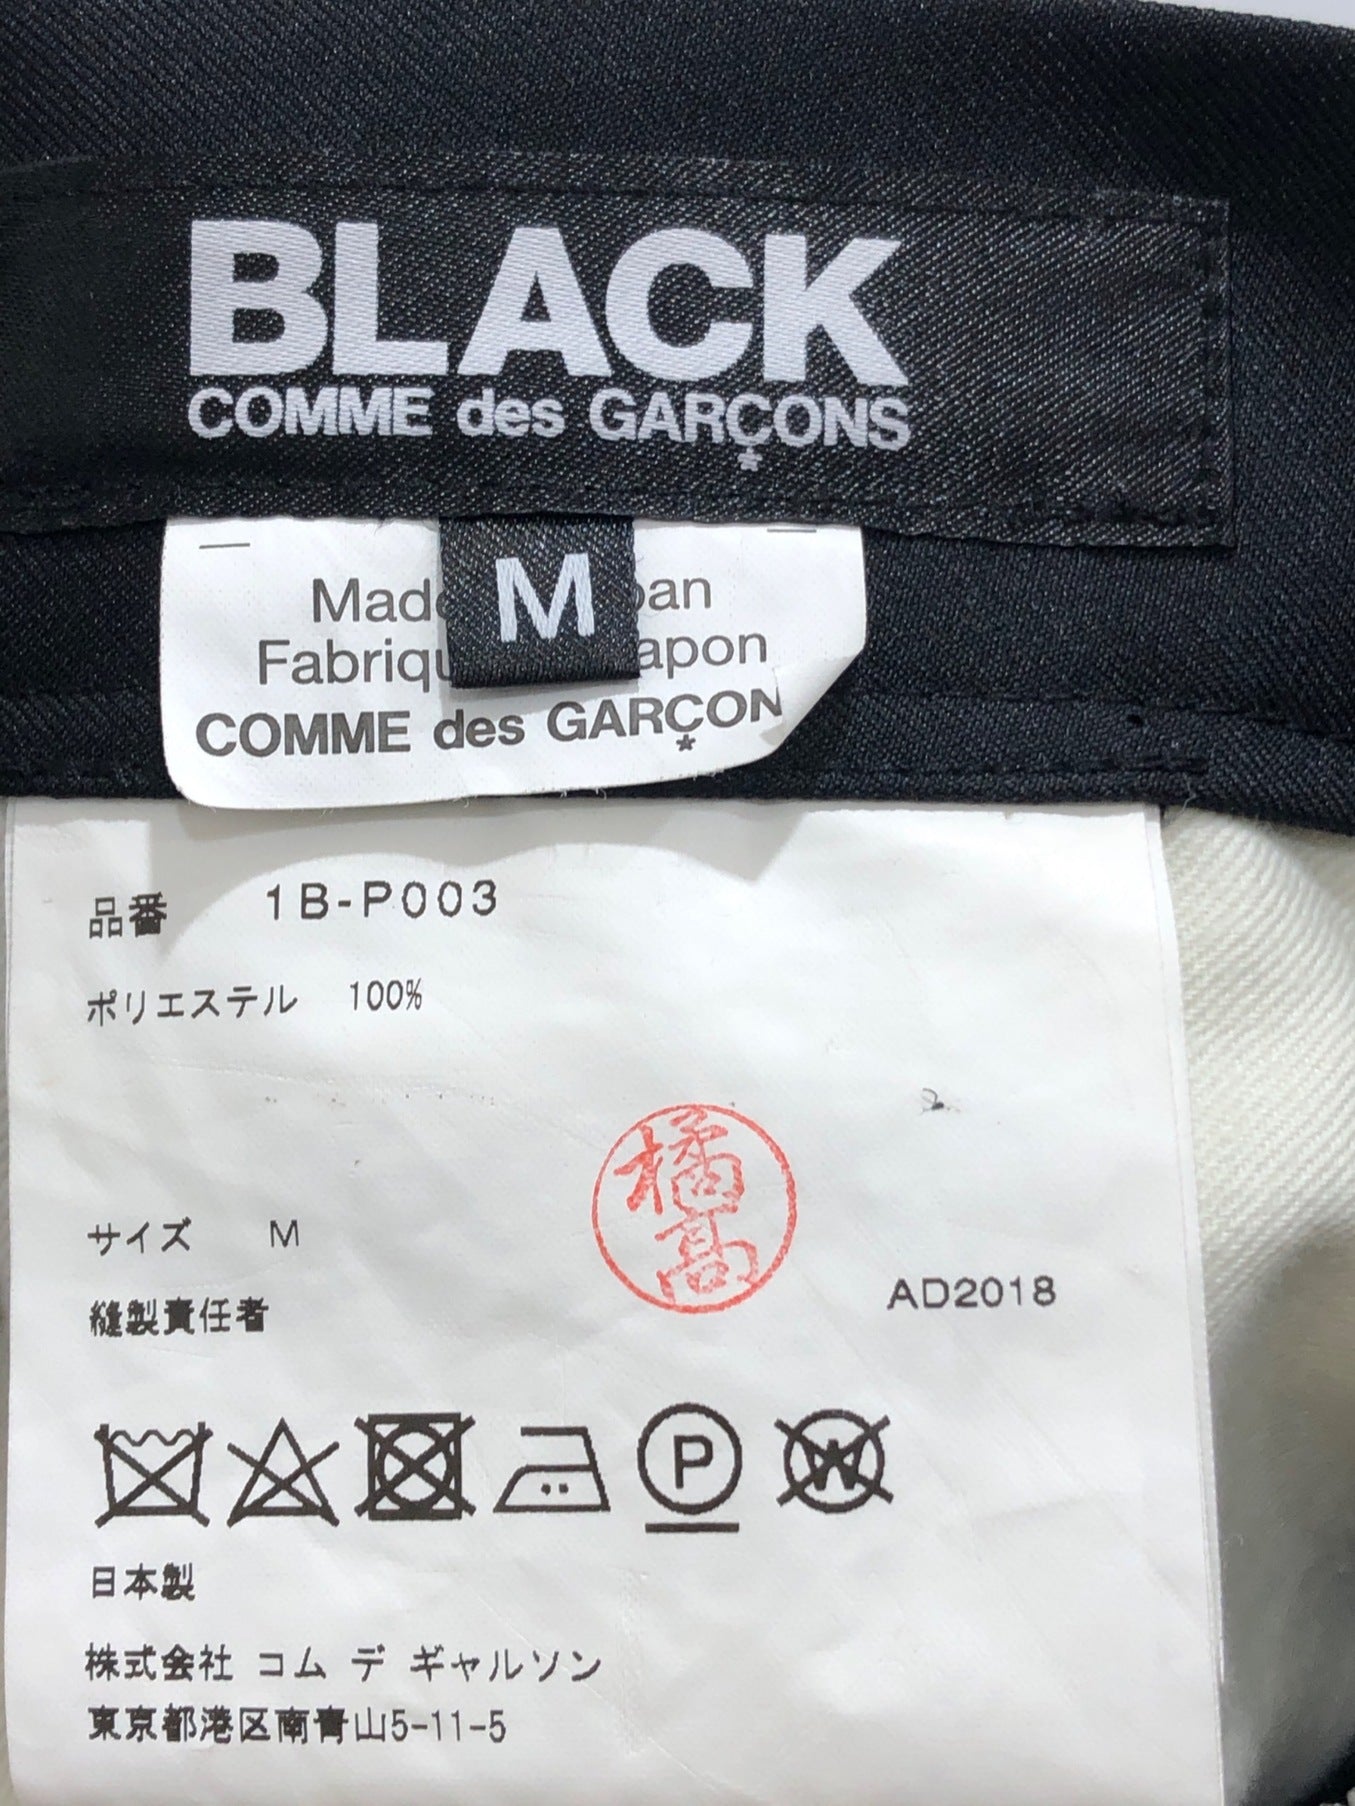 블랙 커먼즈 데 가콘 페인트 바지 1B-P003